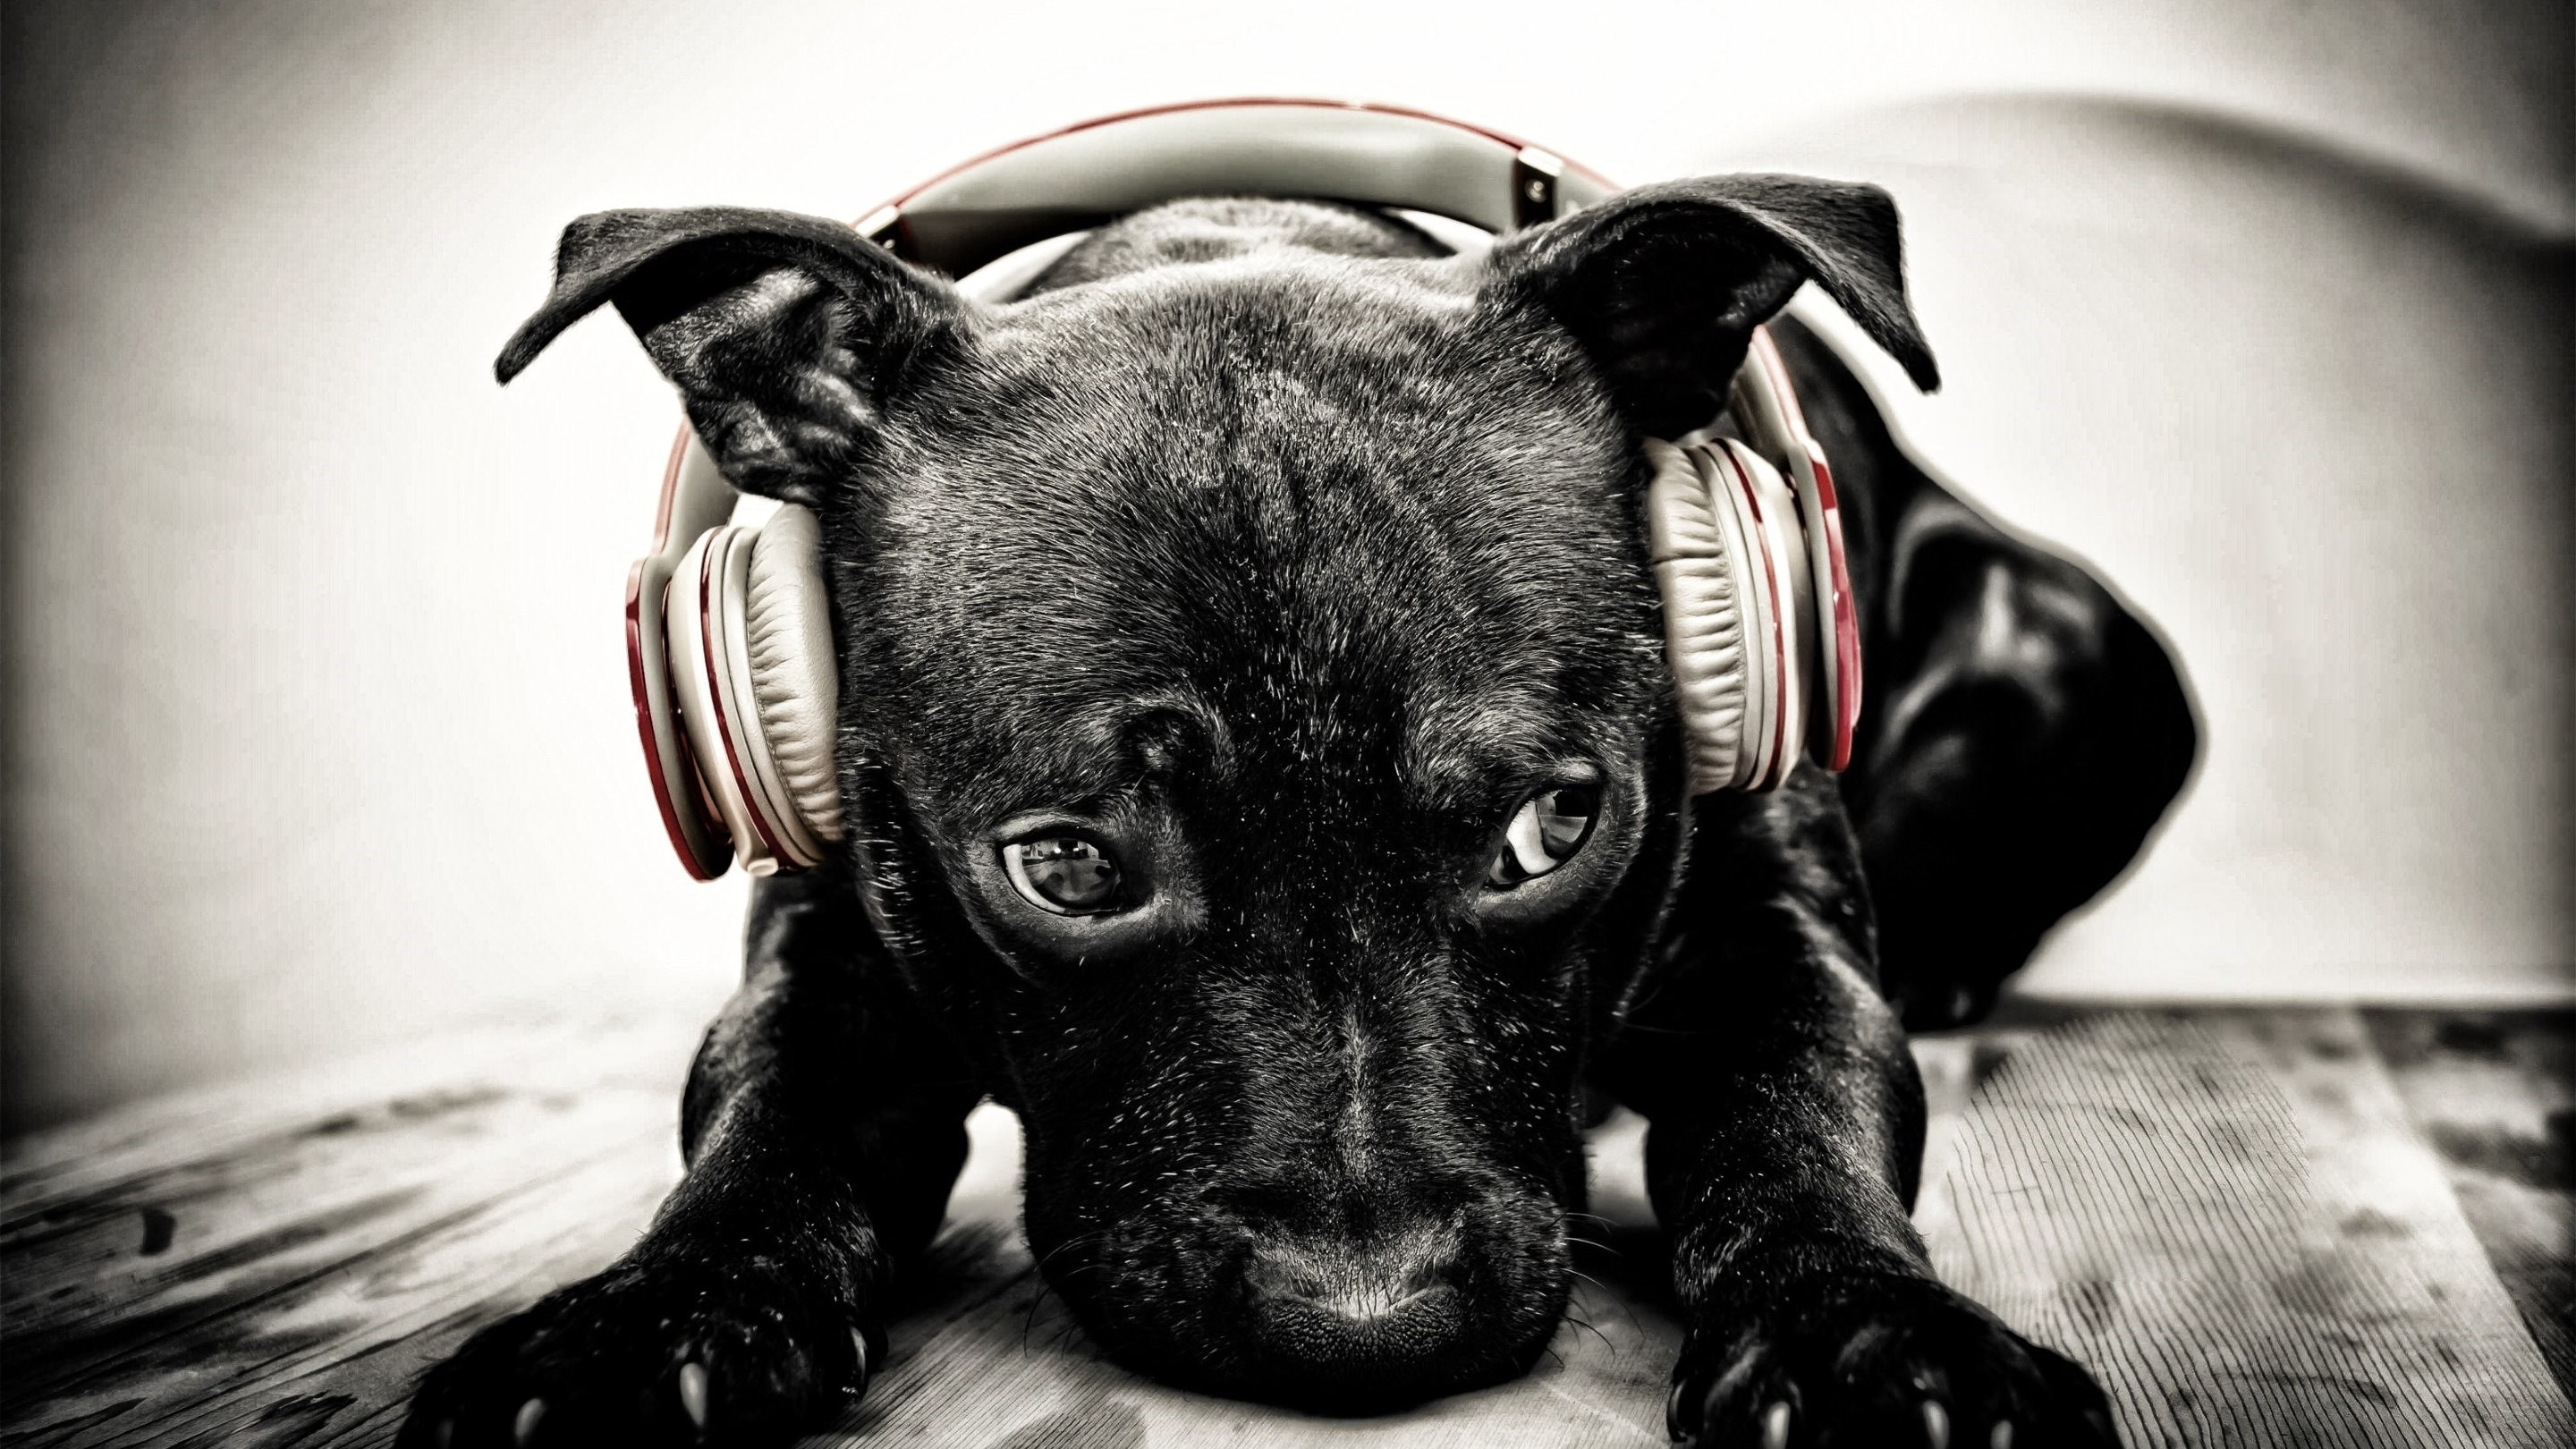 Puppy with beats headphones wallpaper 2880x1620